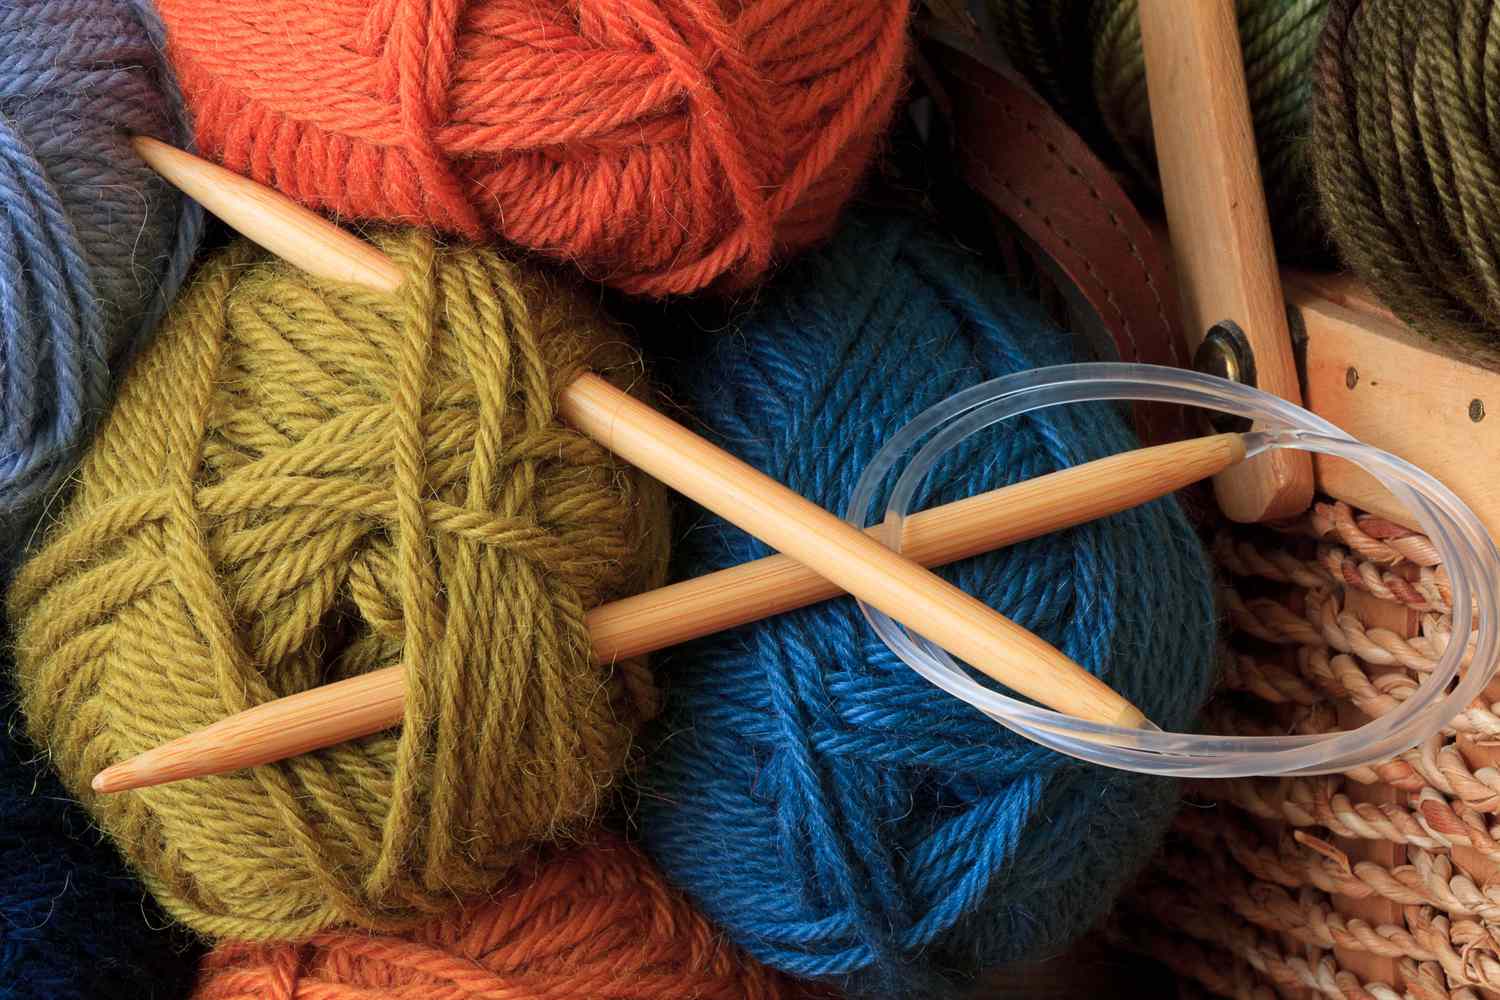 Tools-circular-knitting-needles